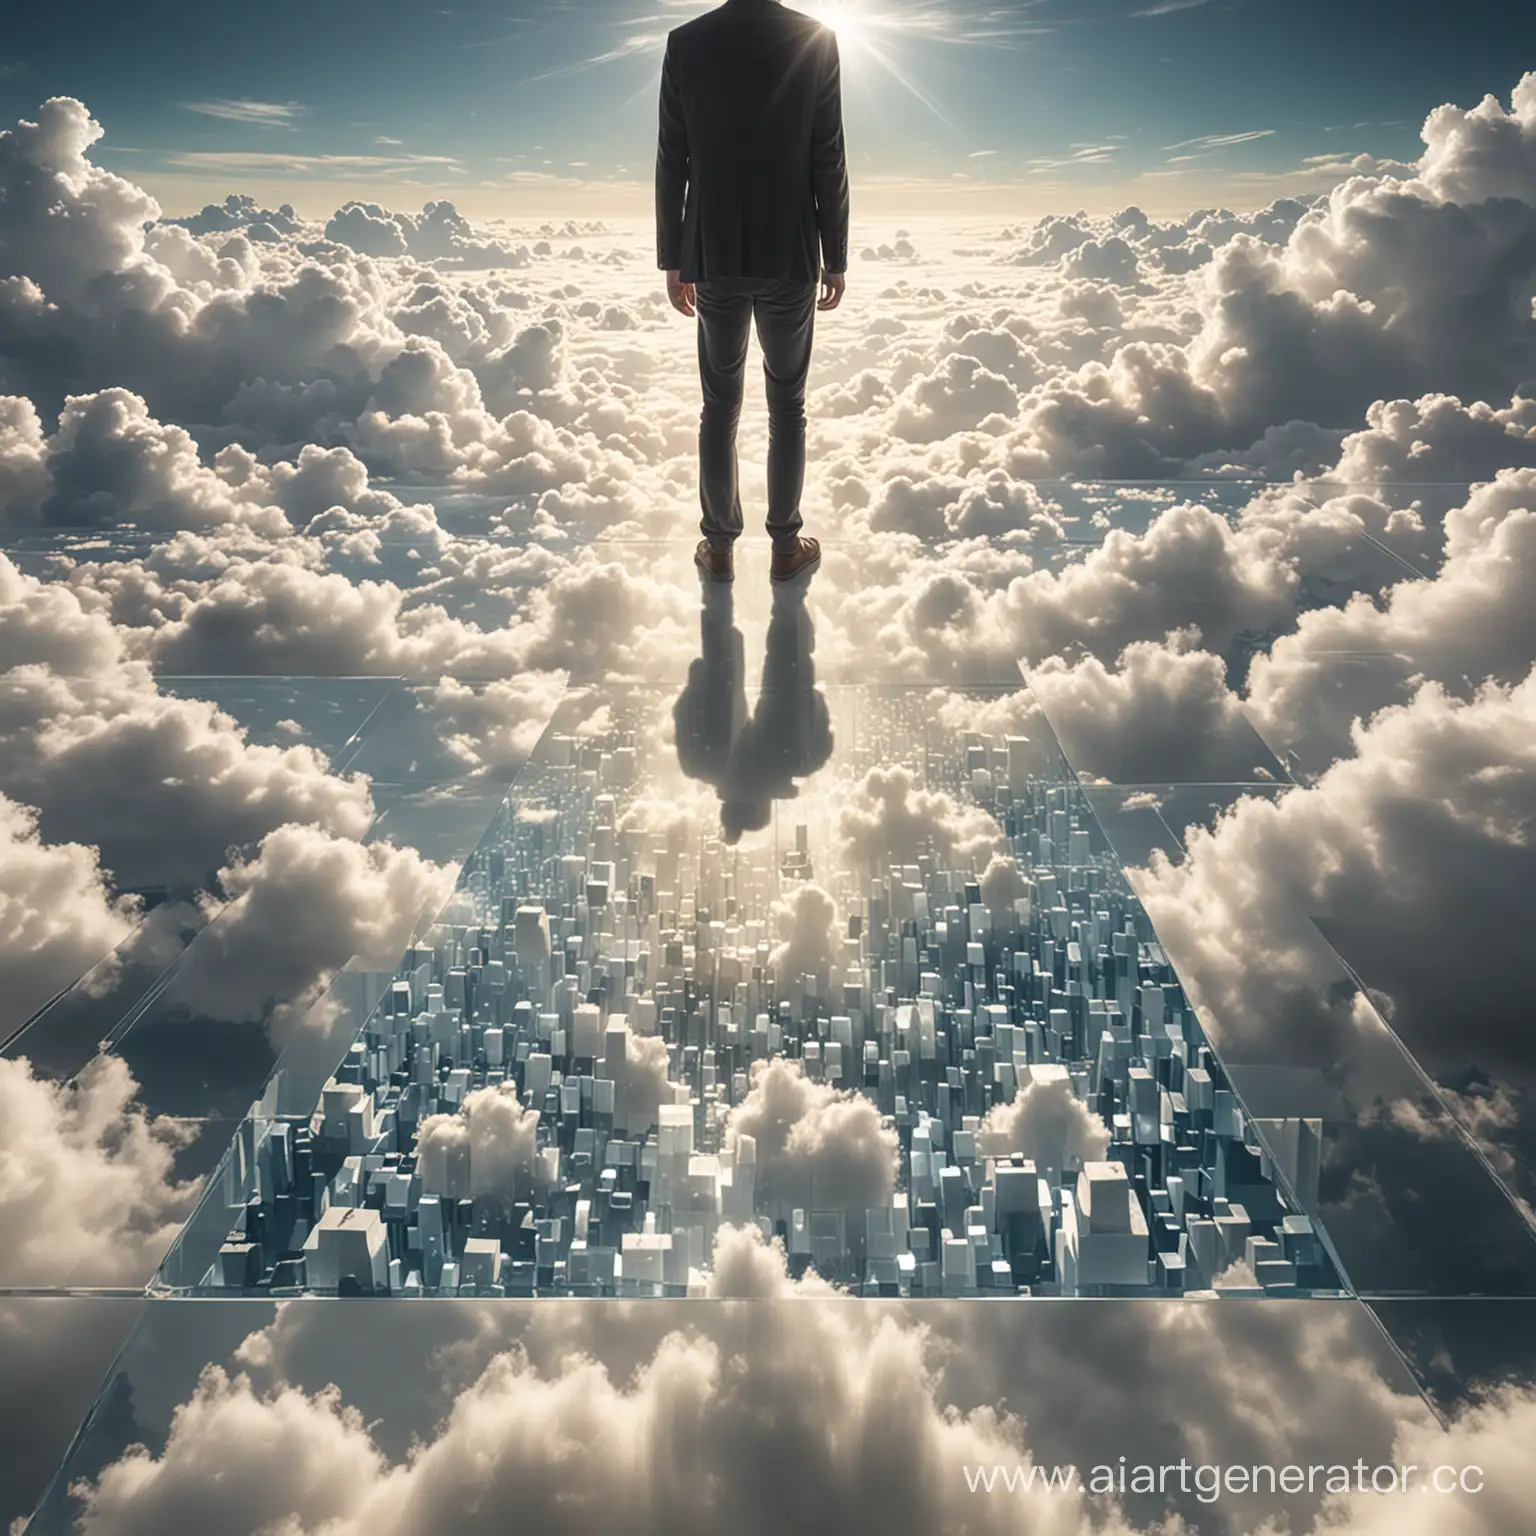 человек стоит на прозрачной поверхности, перед ним бесконечность из света, а под ногами облака созданные из кубических фигур